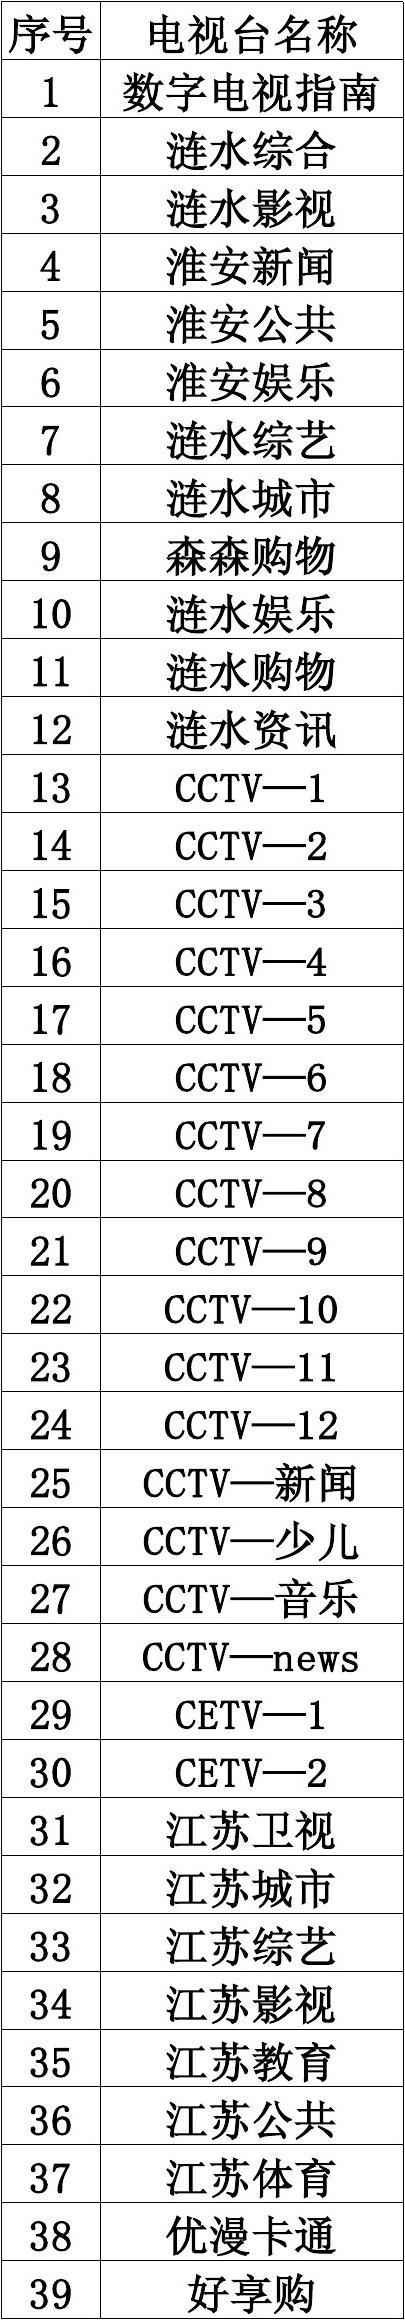 电视6位码_电视机编码在哪个位置_电视6位码111123